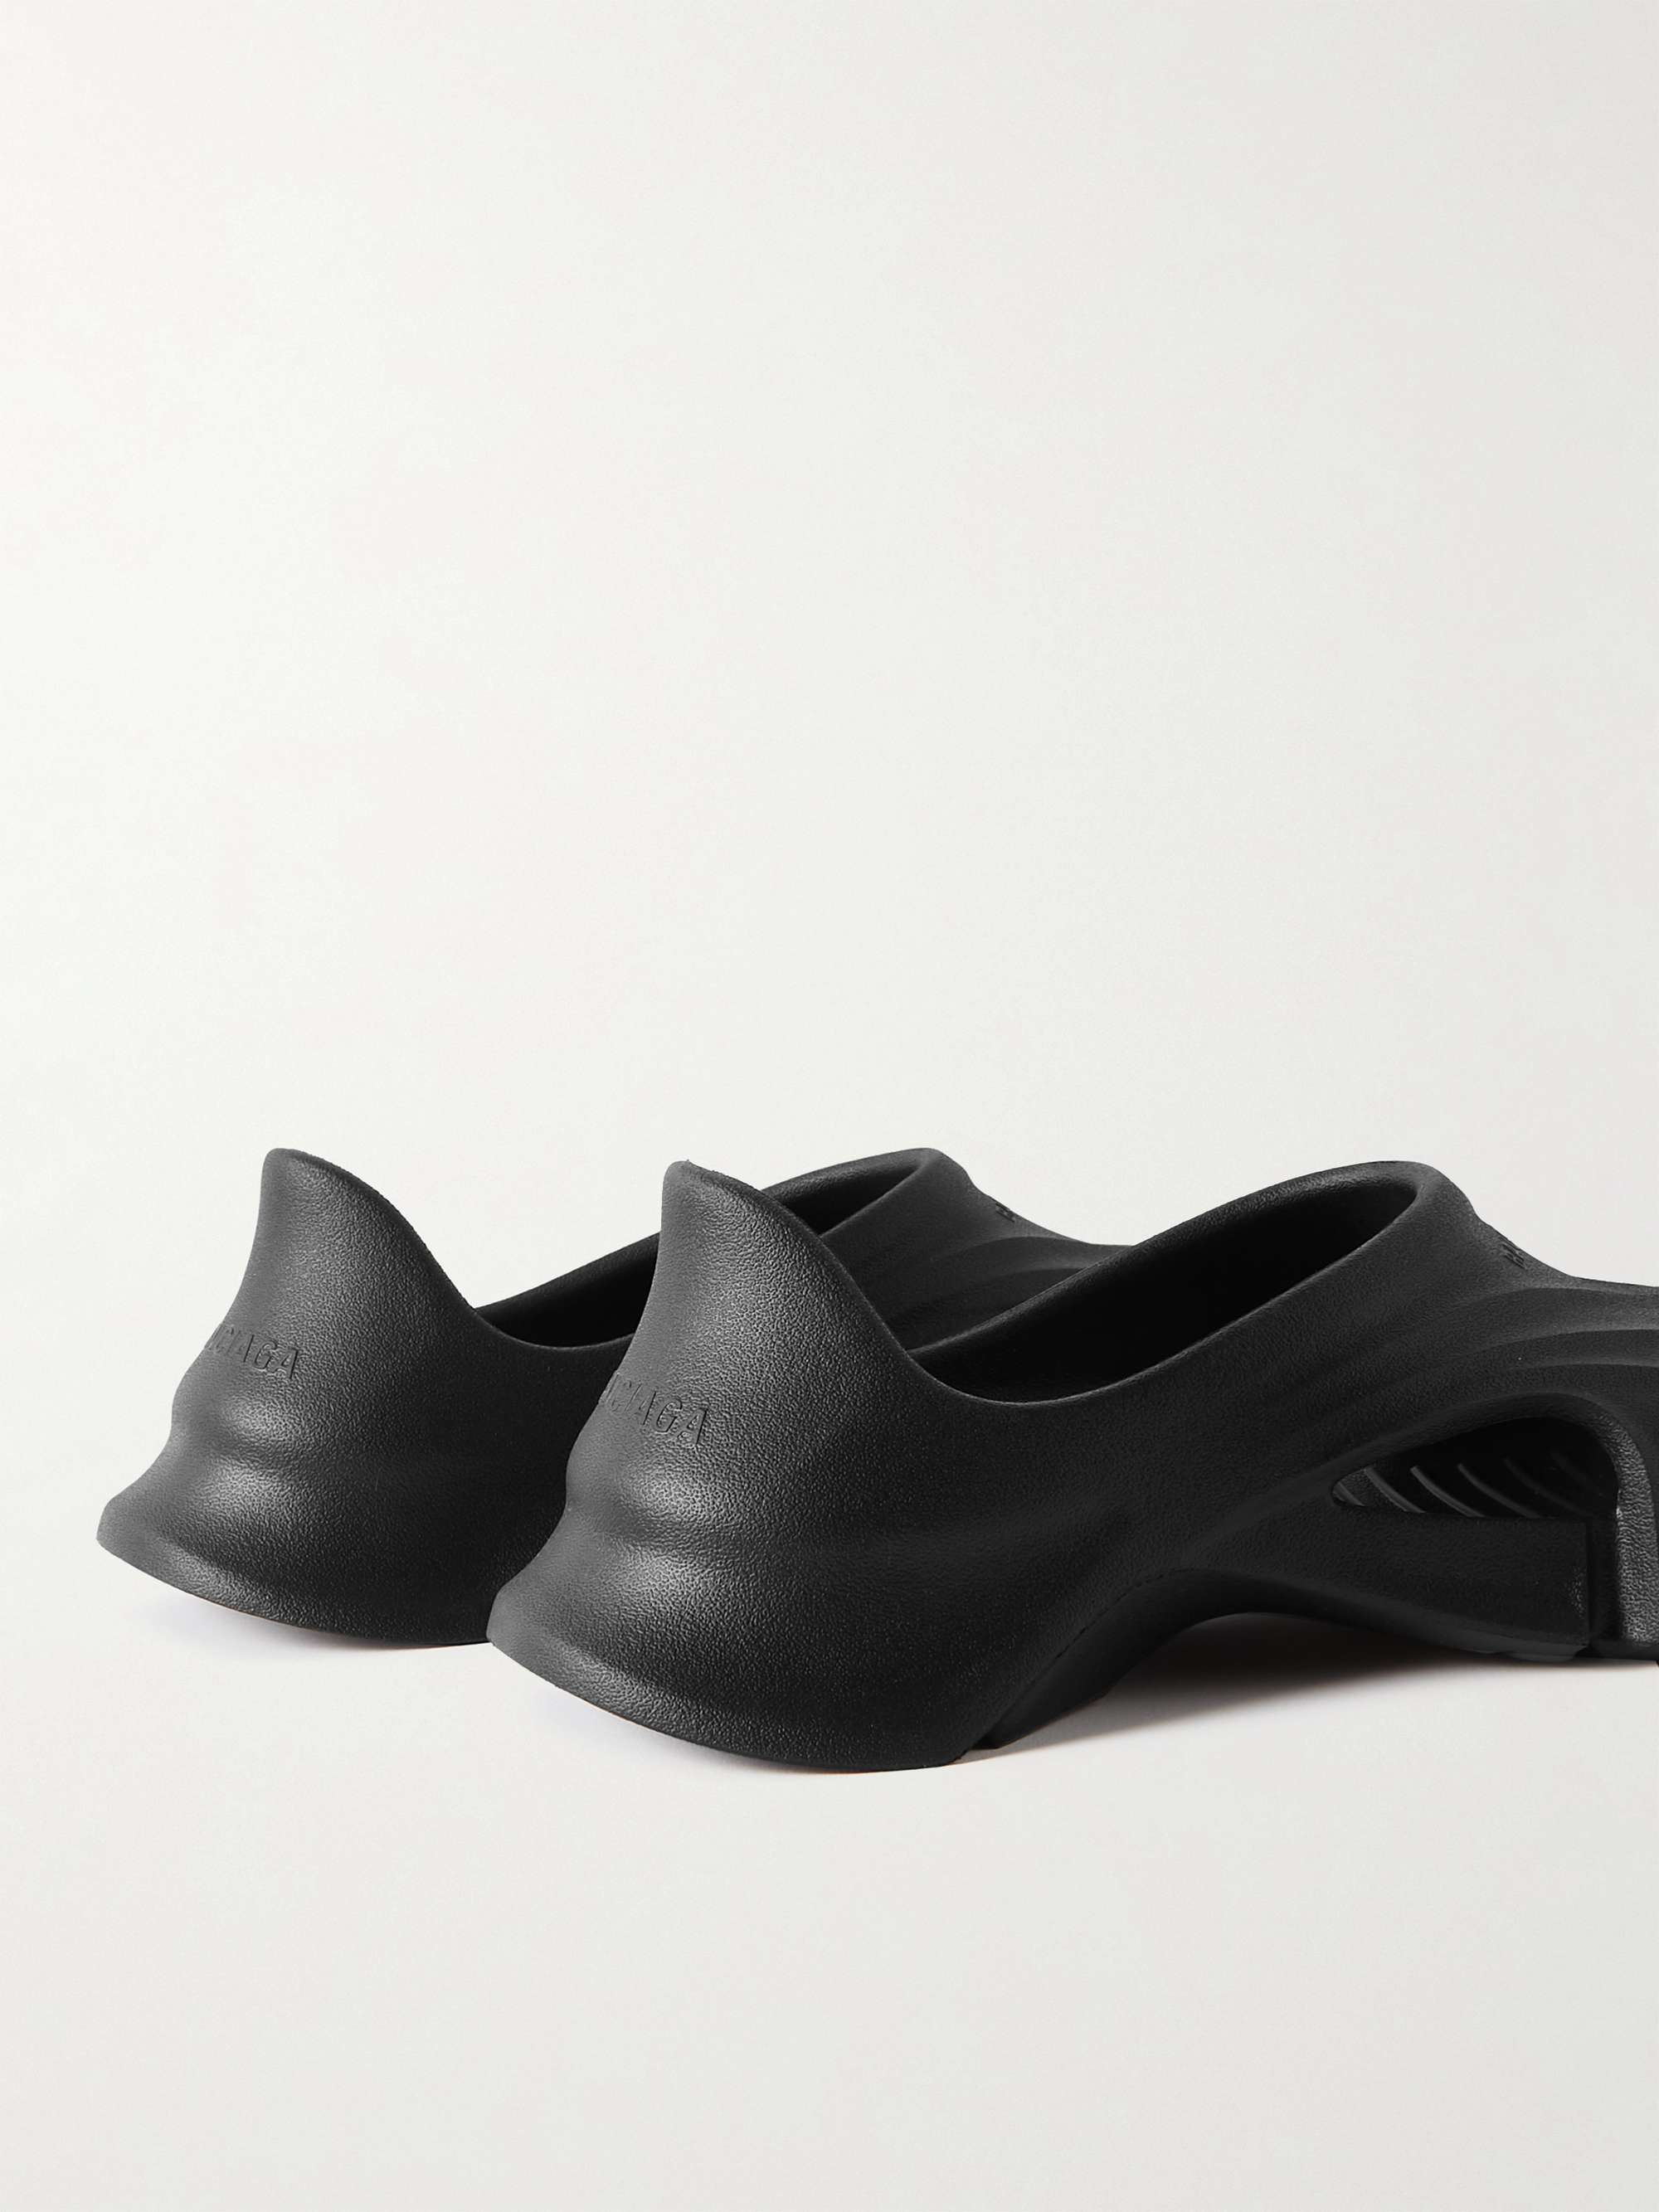 Black Mold Closed Rubber Sandals | BALENCIAGA | MR PORTER